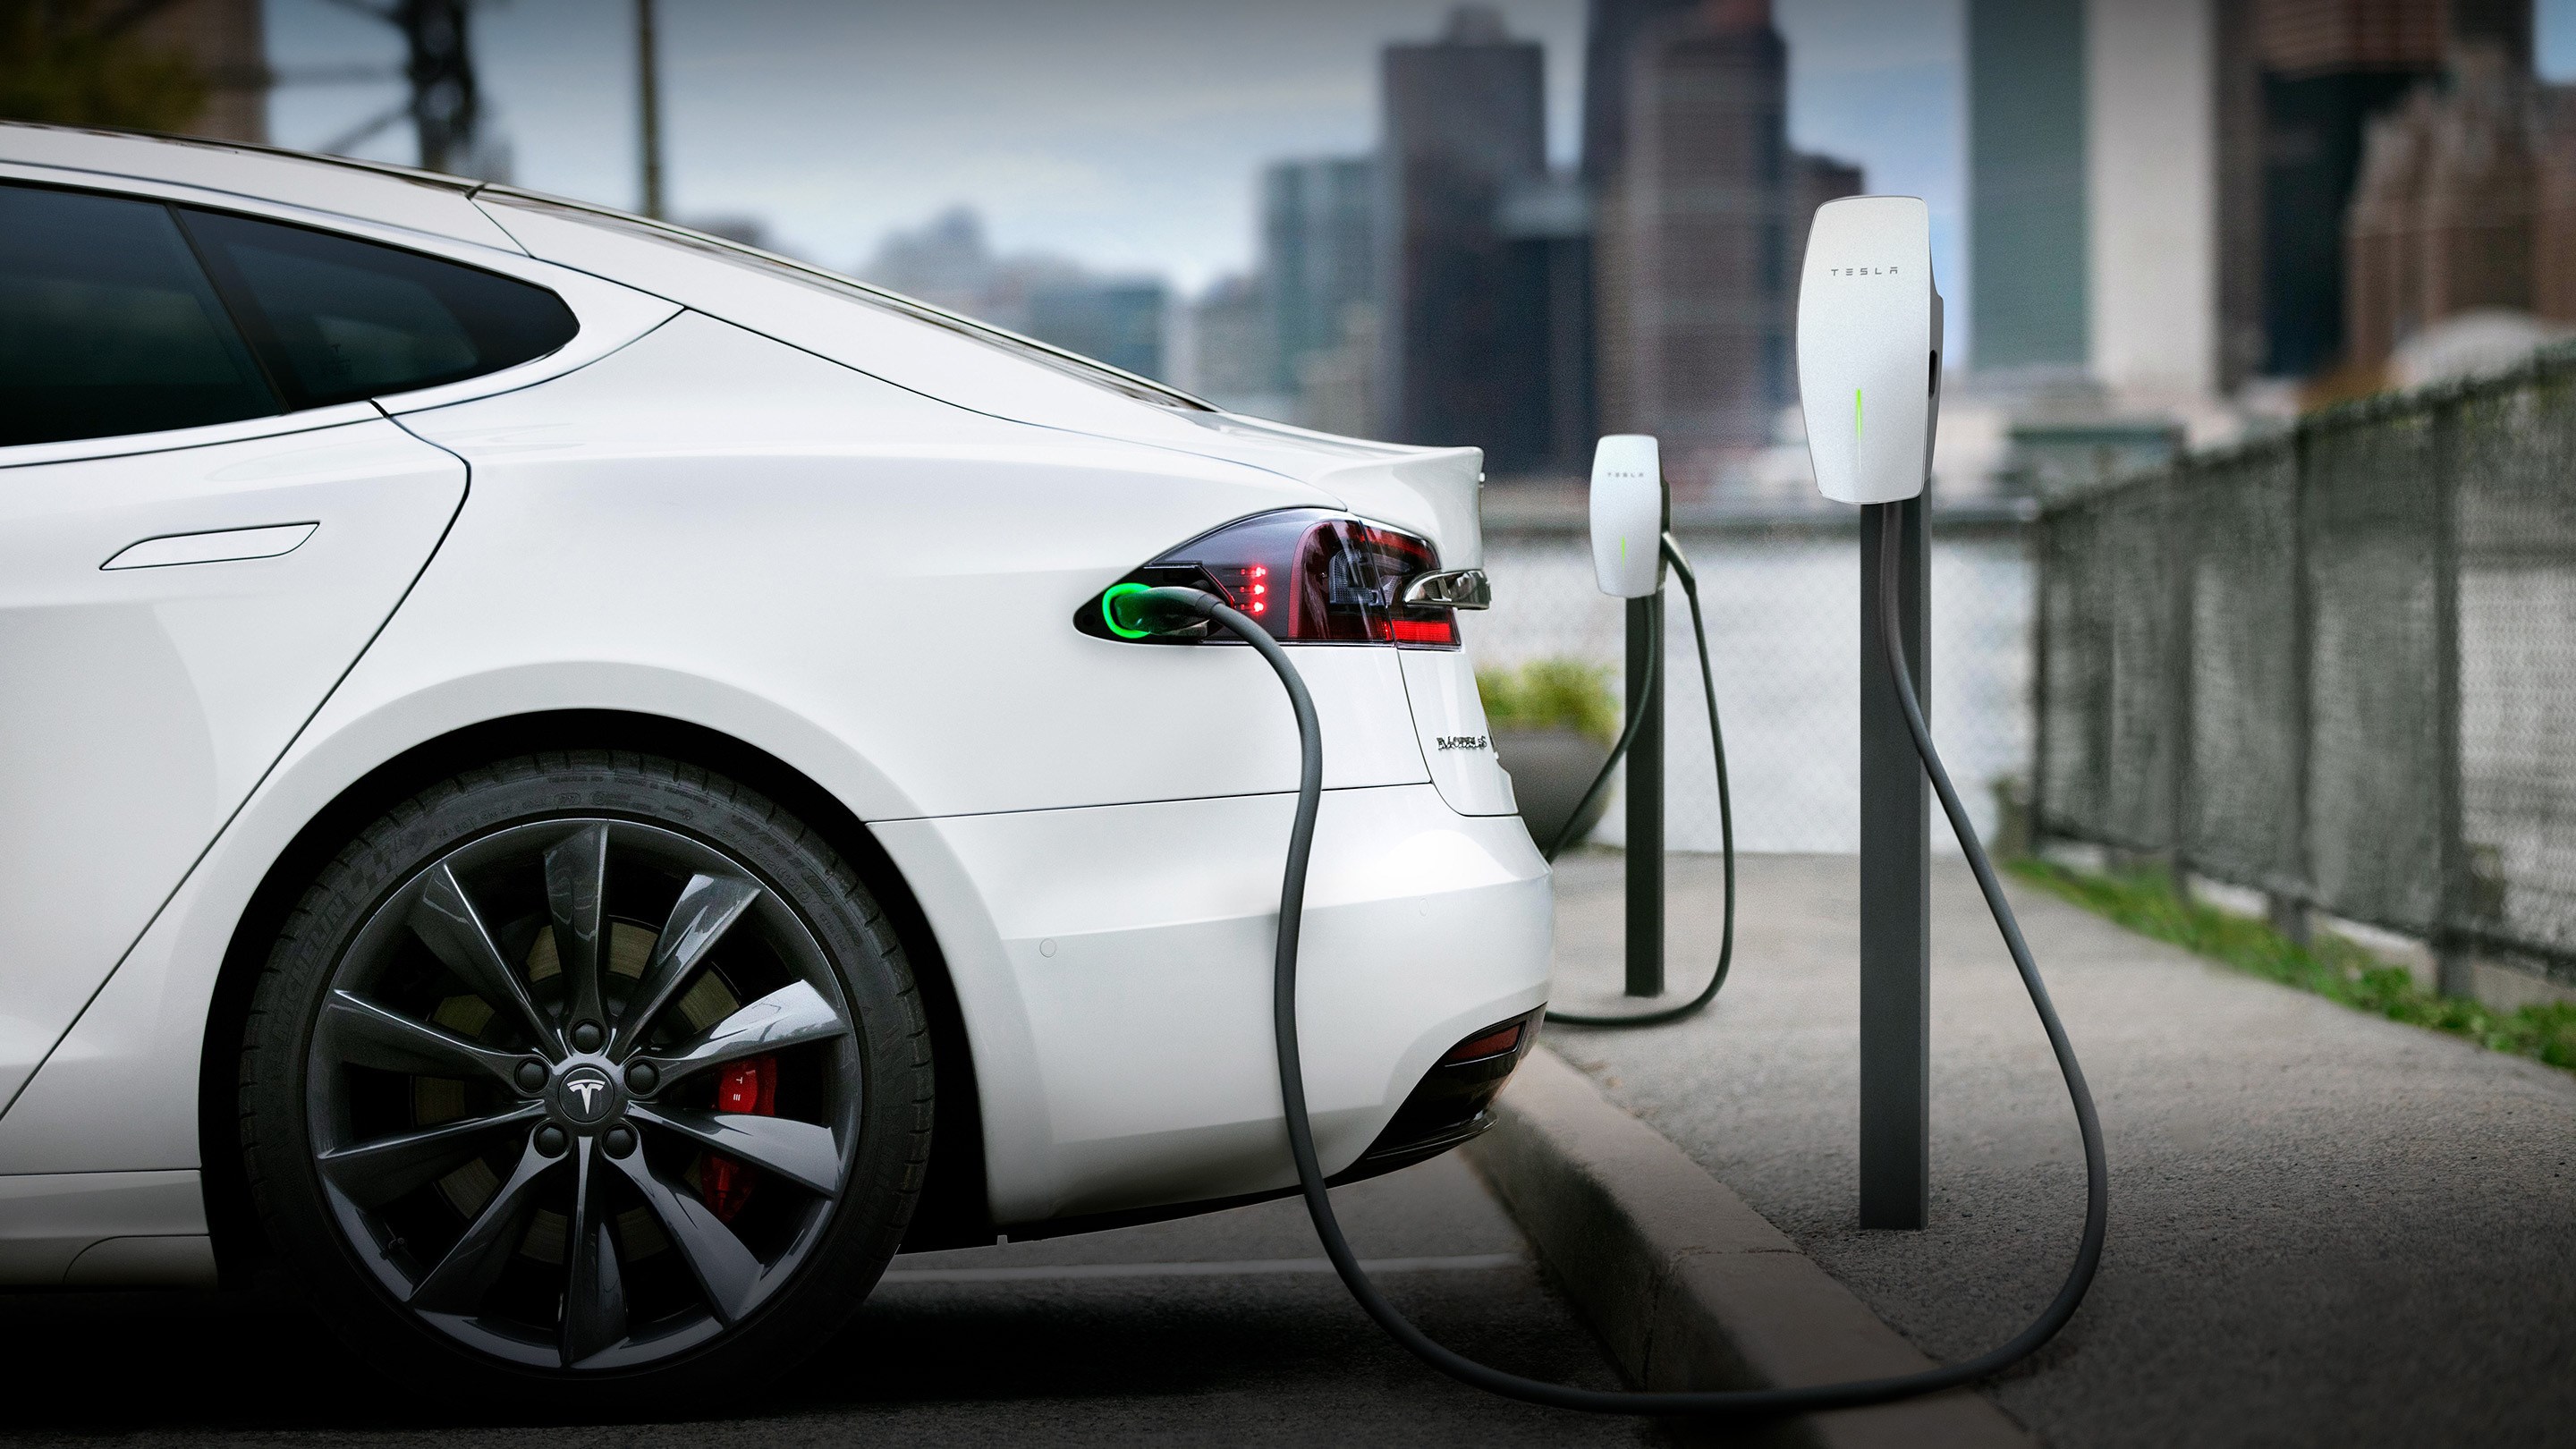 Elektrikli otomobiller %0 şarjla ne kadar yol gidebilir?